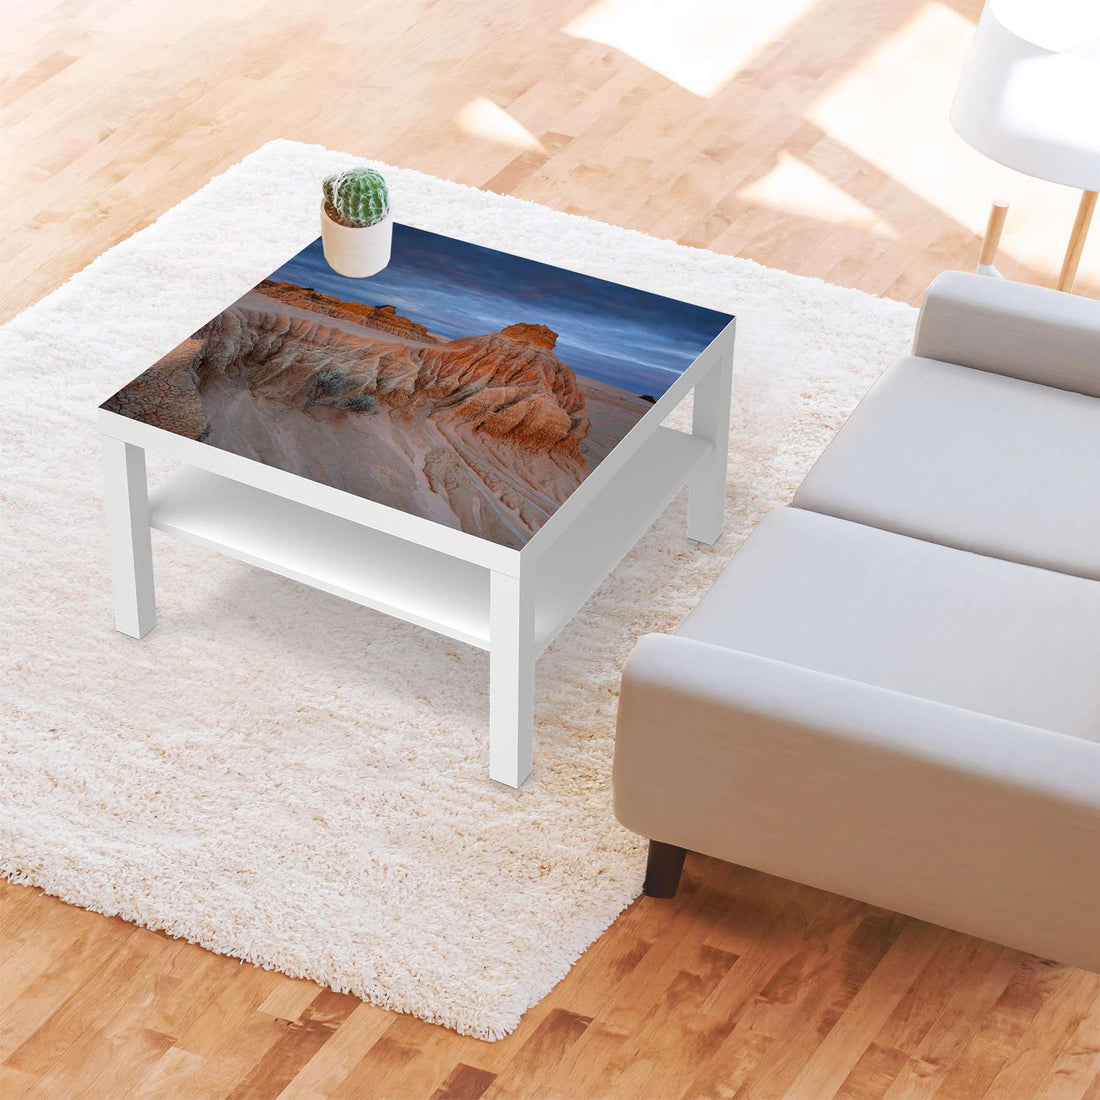 Selbstklebende Folie Outback Australia - IKEA Lack Tisch 78x78 cm - Wohnzimmer